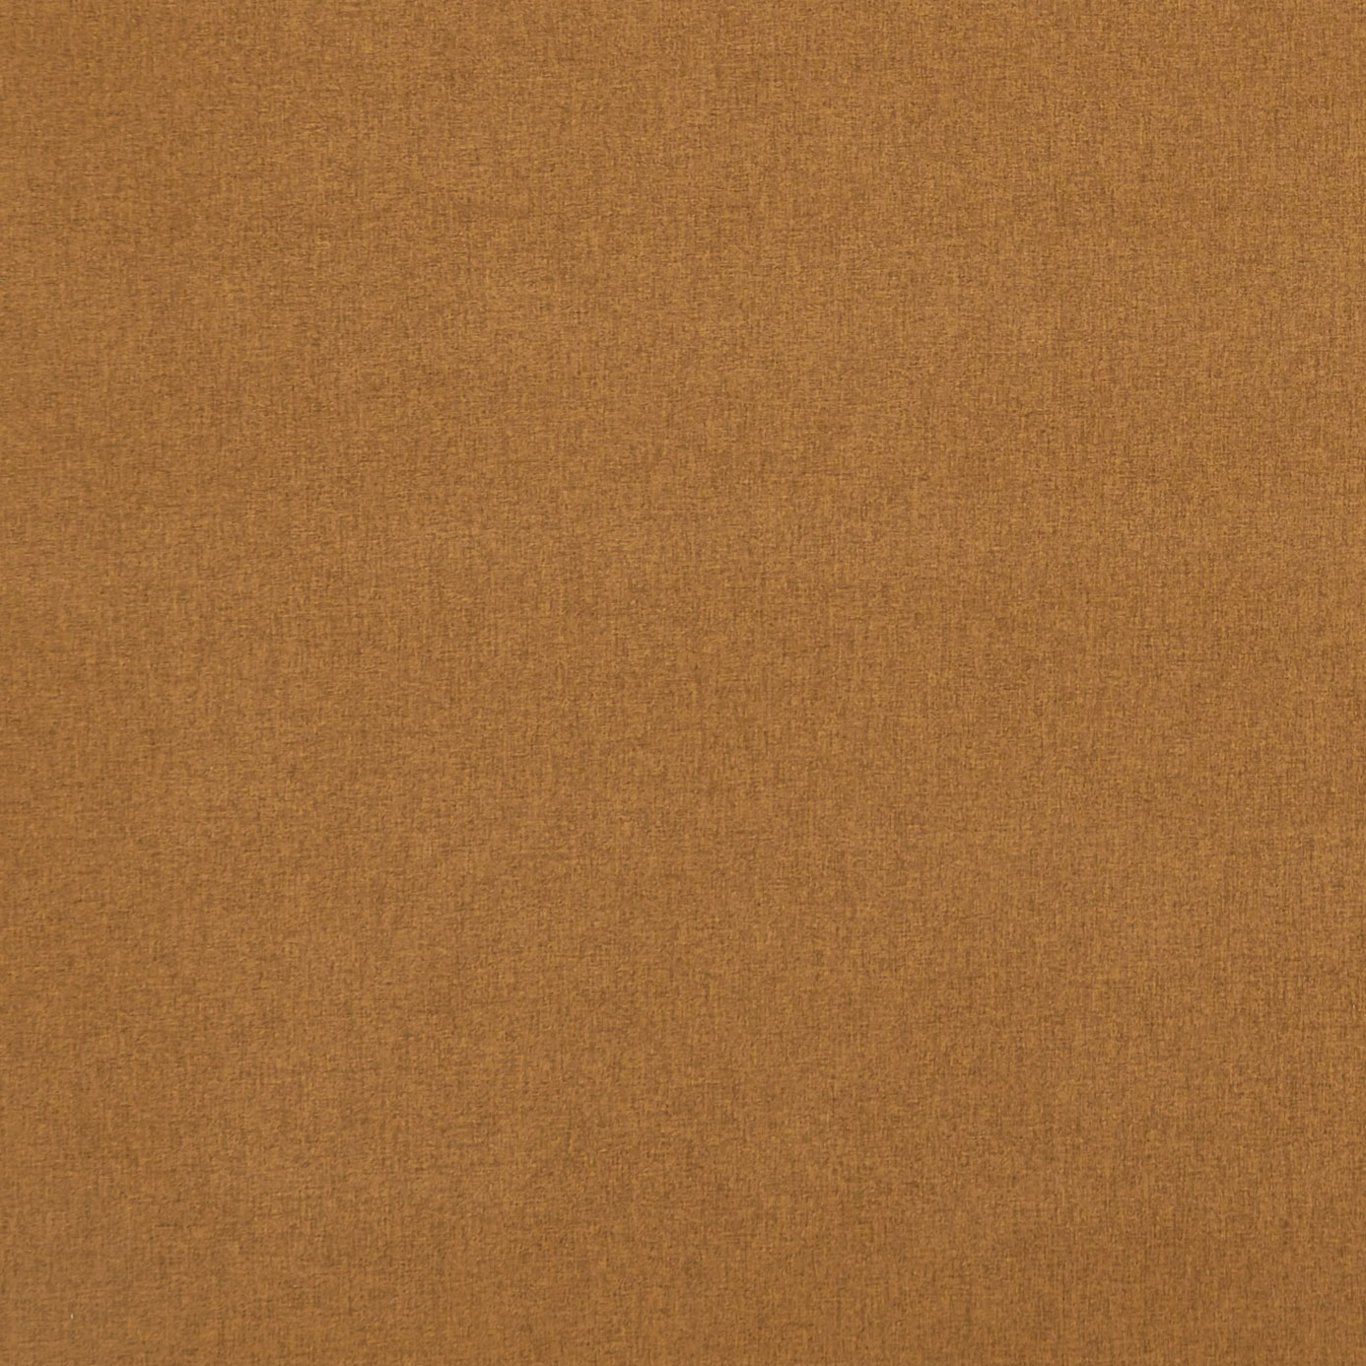 Highlander Cinnamon Fabric by CNC